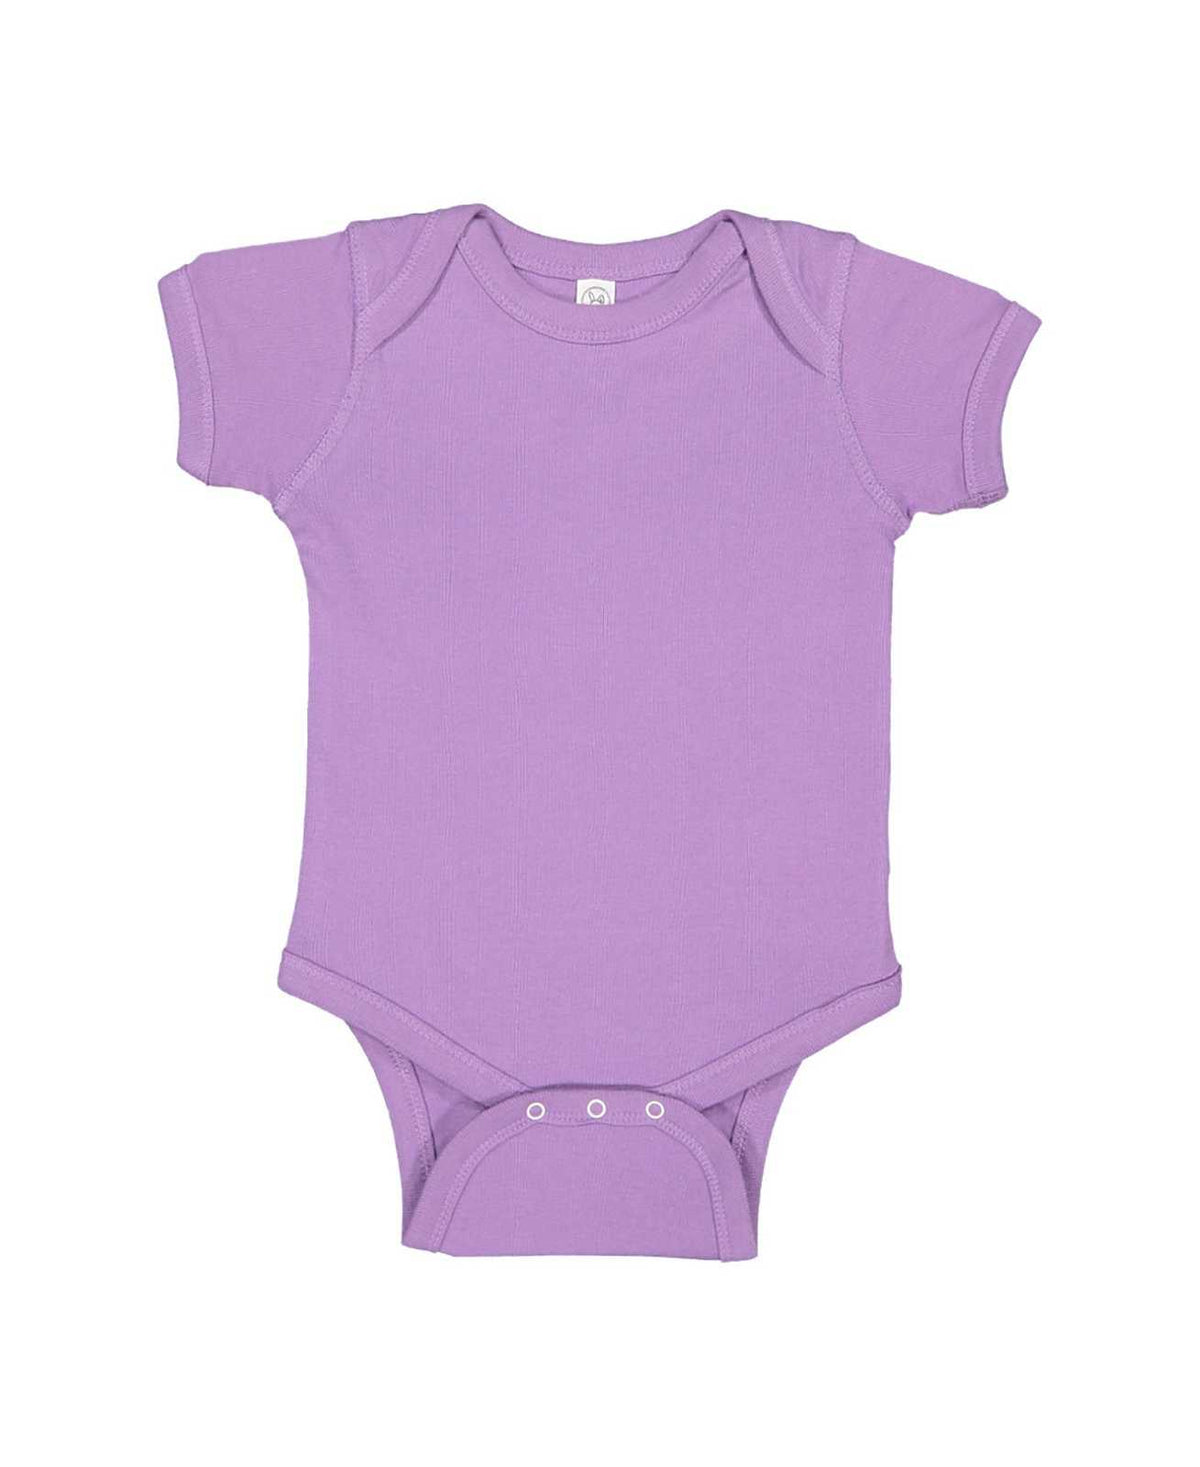 Rabbit Skins 4424 Infant Vintage Fine Jersey Bodysuit - Lavender - HIT a Double